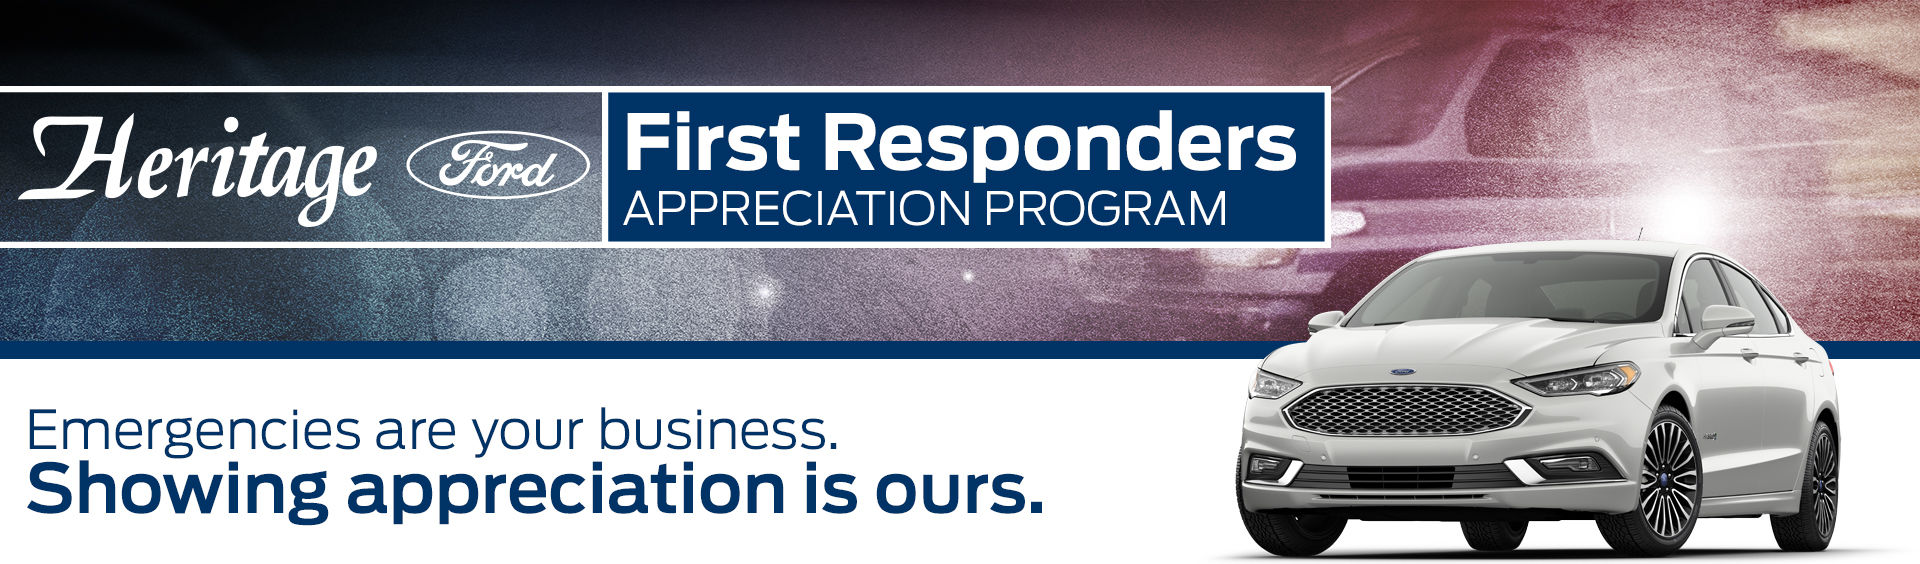 first-responder-rebate-heritage-ford